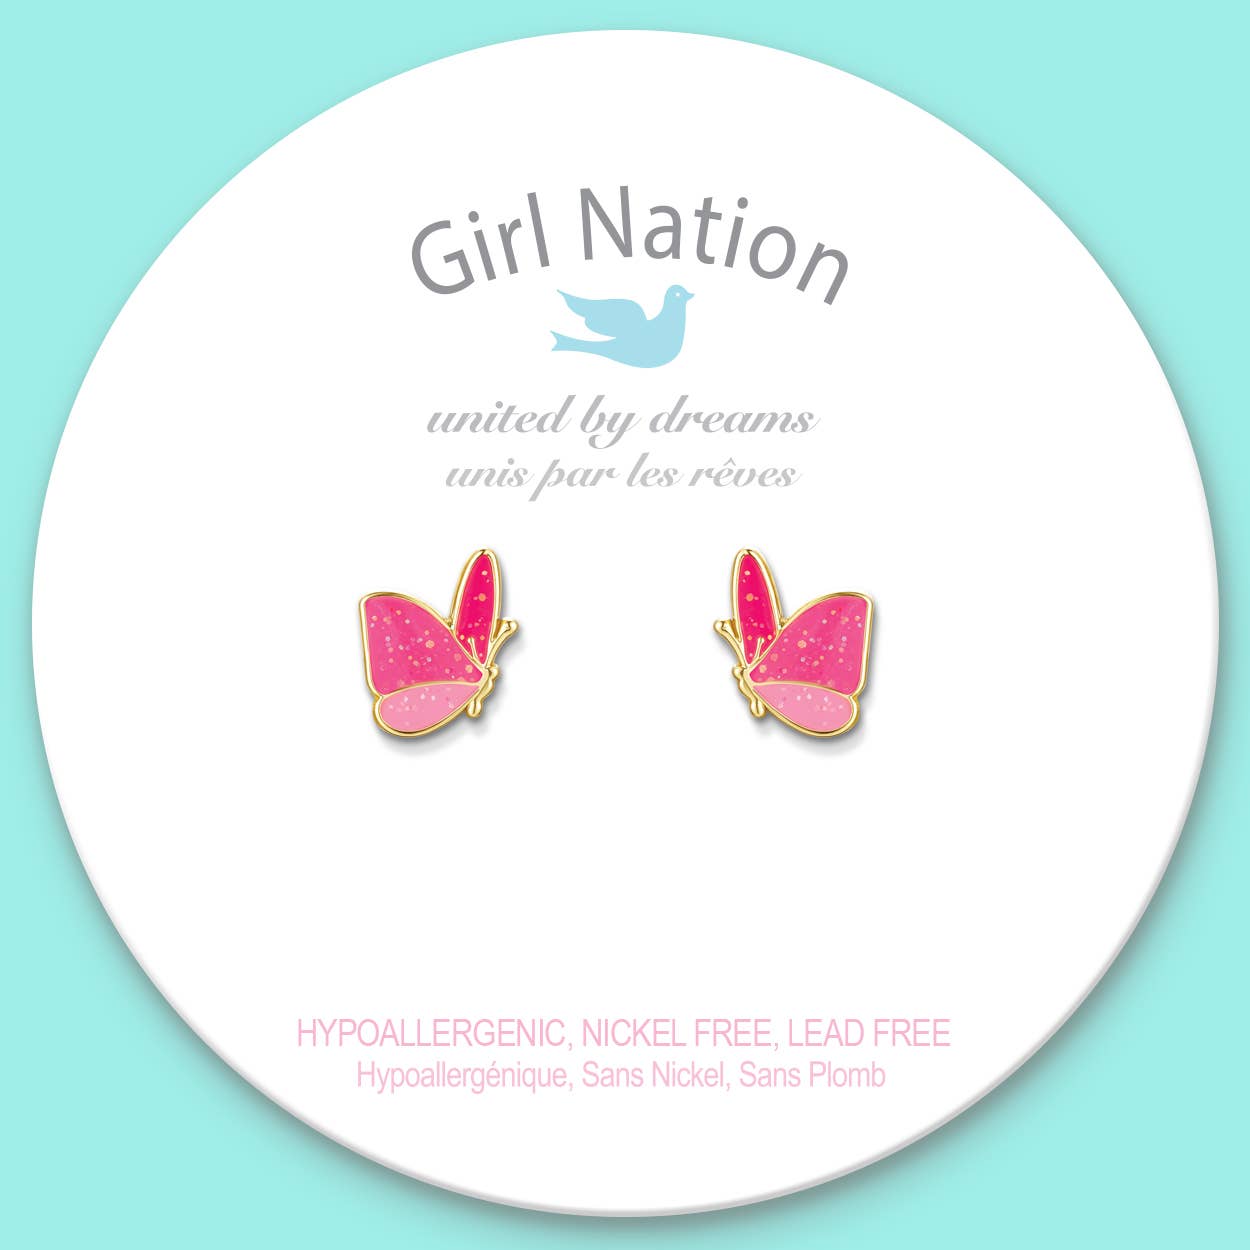 Glitter Butterfly Pierced Earrings